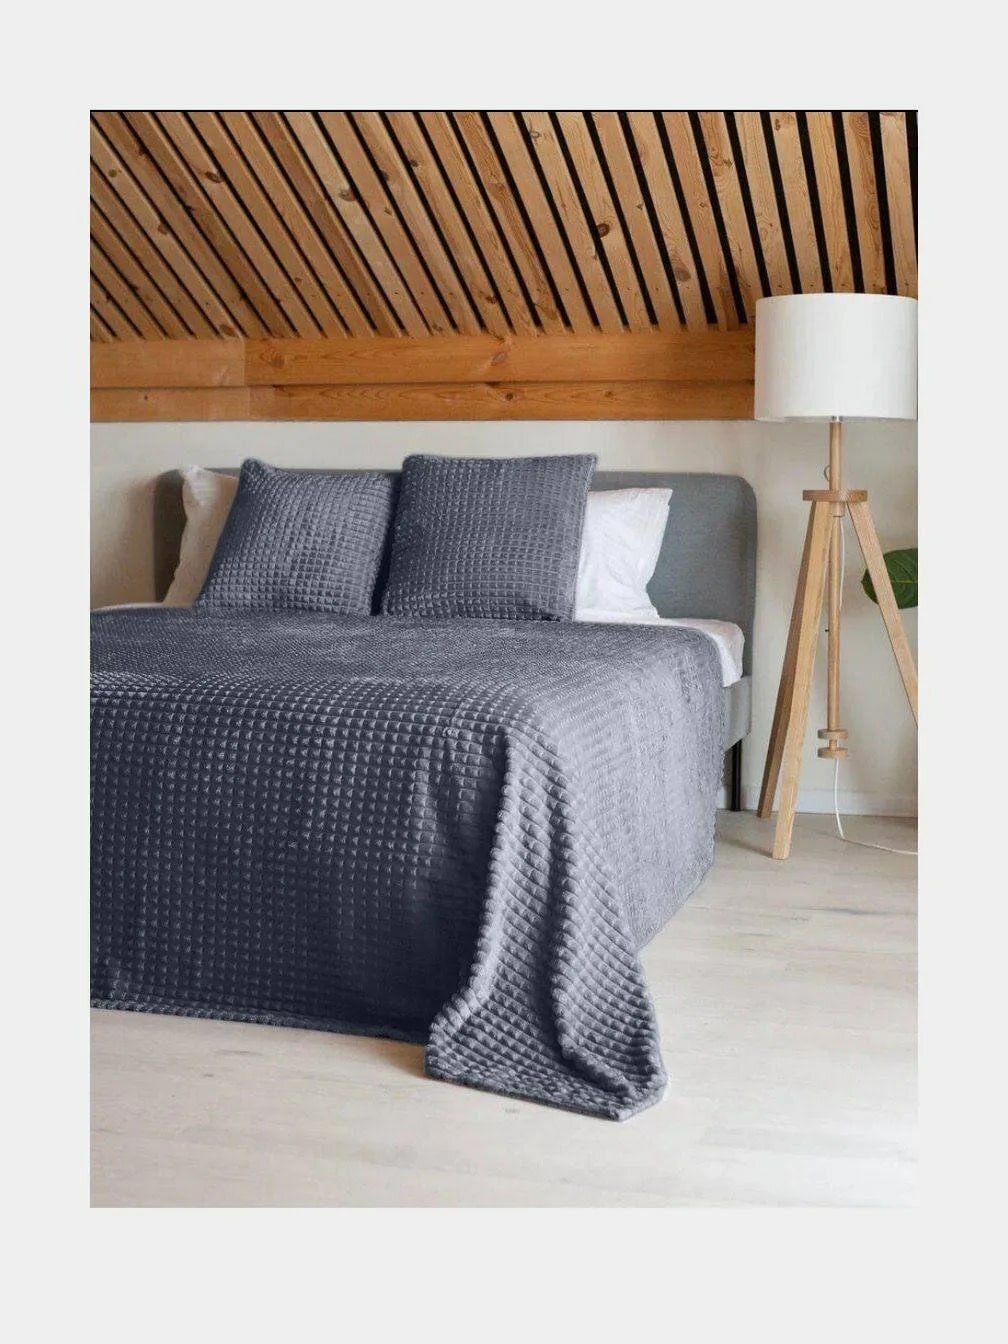 Плед 200х220 кубики графит серый(в комплект входит сумка), евро, 2-спальный, покрывало, плед на диван кровать в гостиную спальню детскую теплый